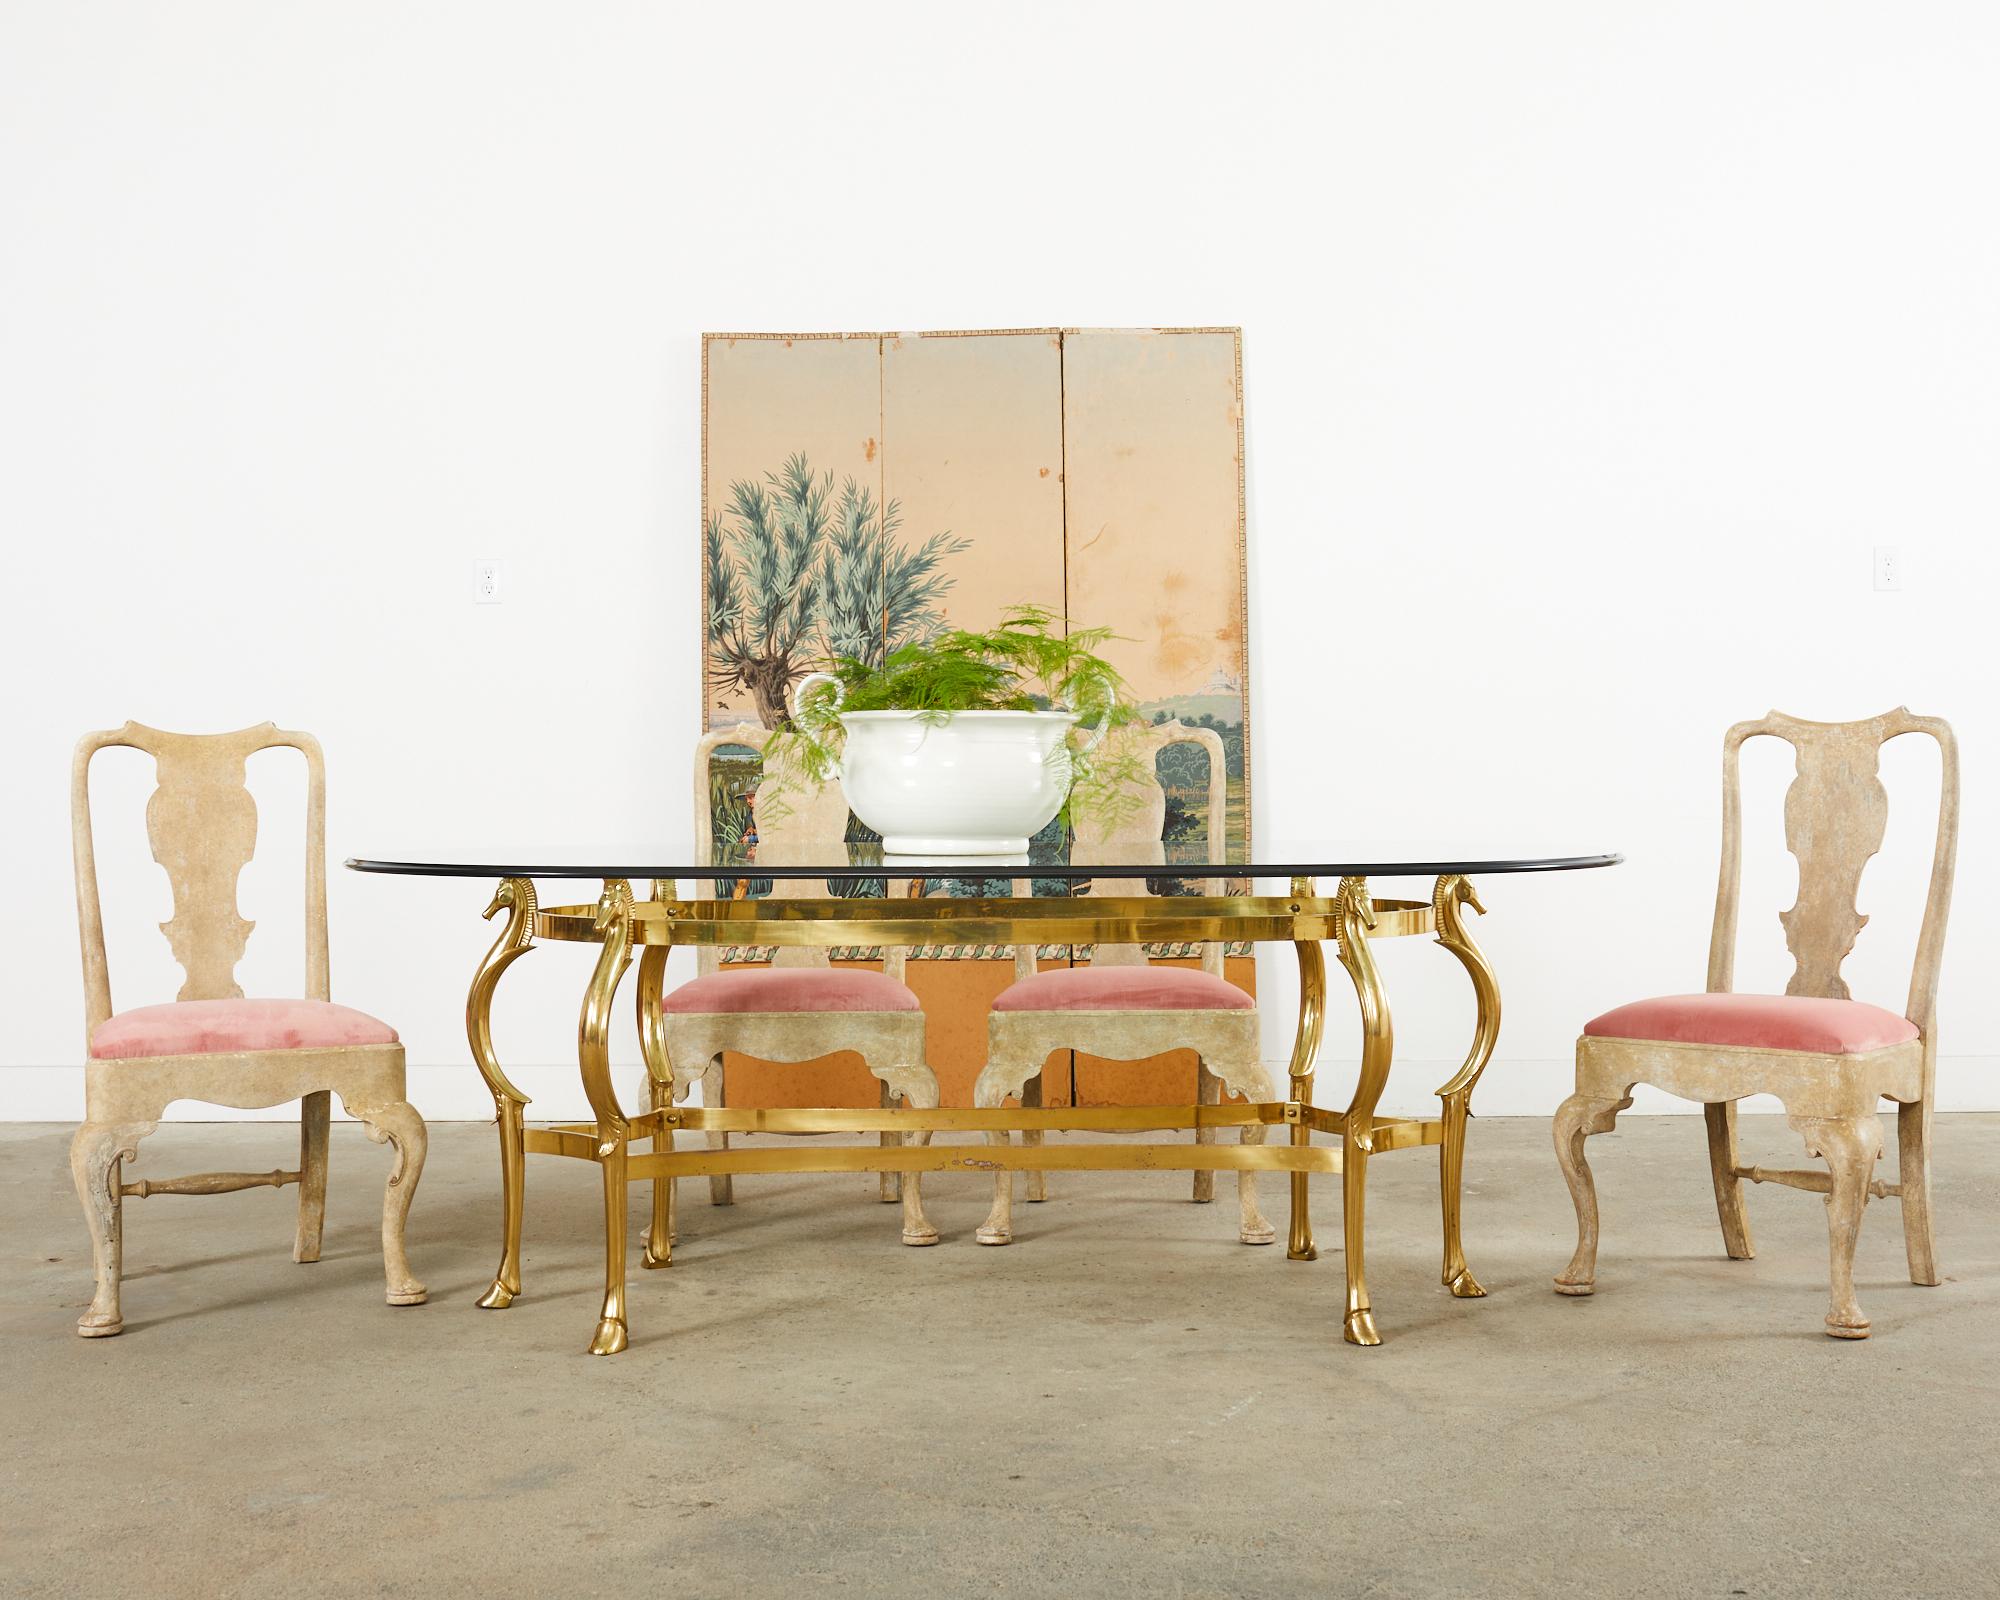 Superbe ensemble de six chaises de salle à manger sur mesure par A. Rudin Hollywood, CA. Les chaises sont dotées d'un cadre de style Queen Anne ou baroque du XVIIIe siècle. Les cadres ont un fini intentionnellement délavé ou décapé sur le bois de